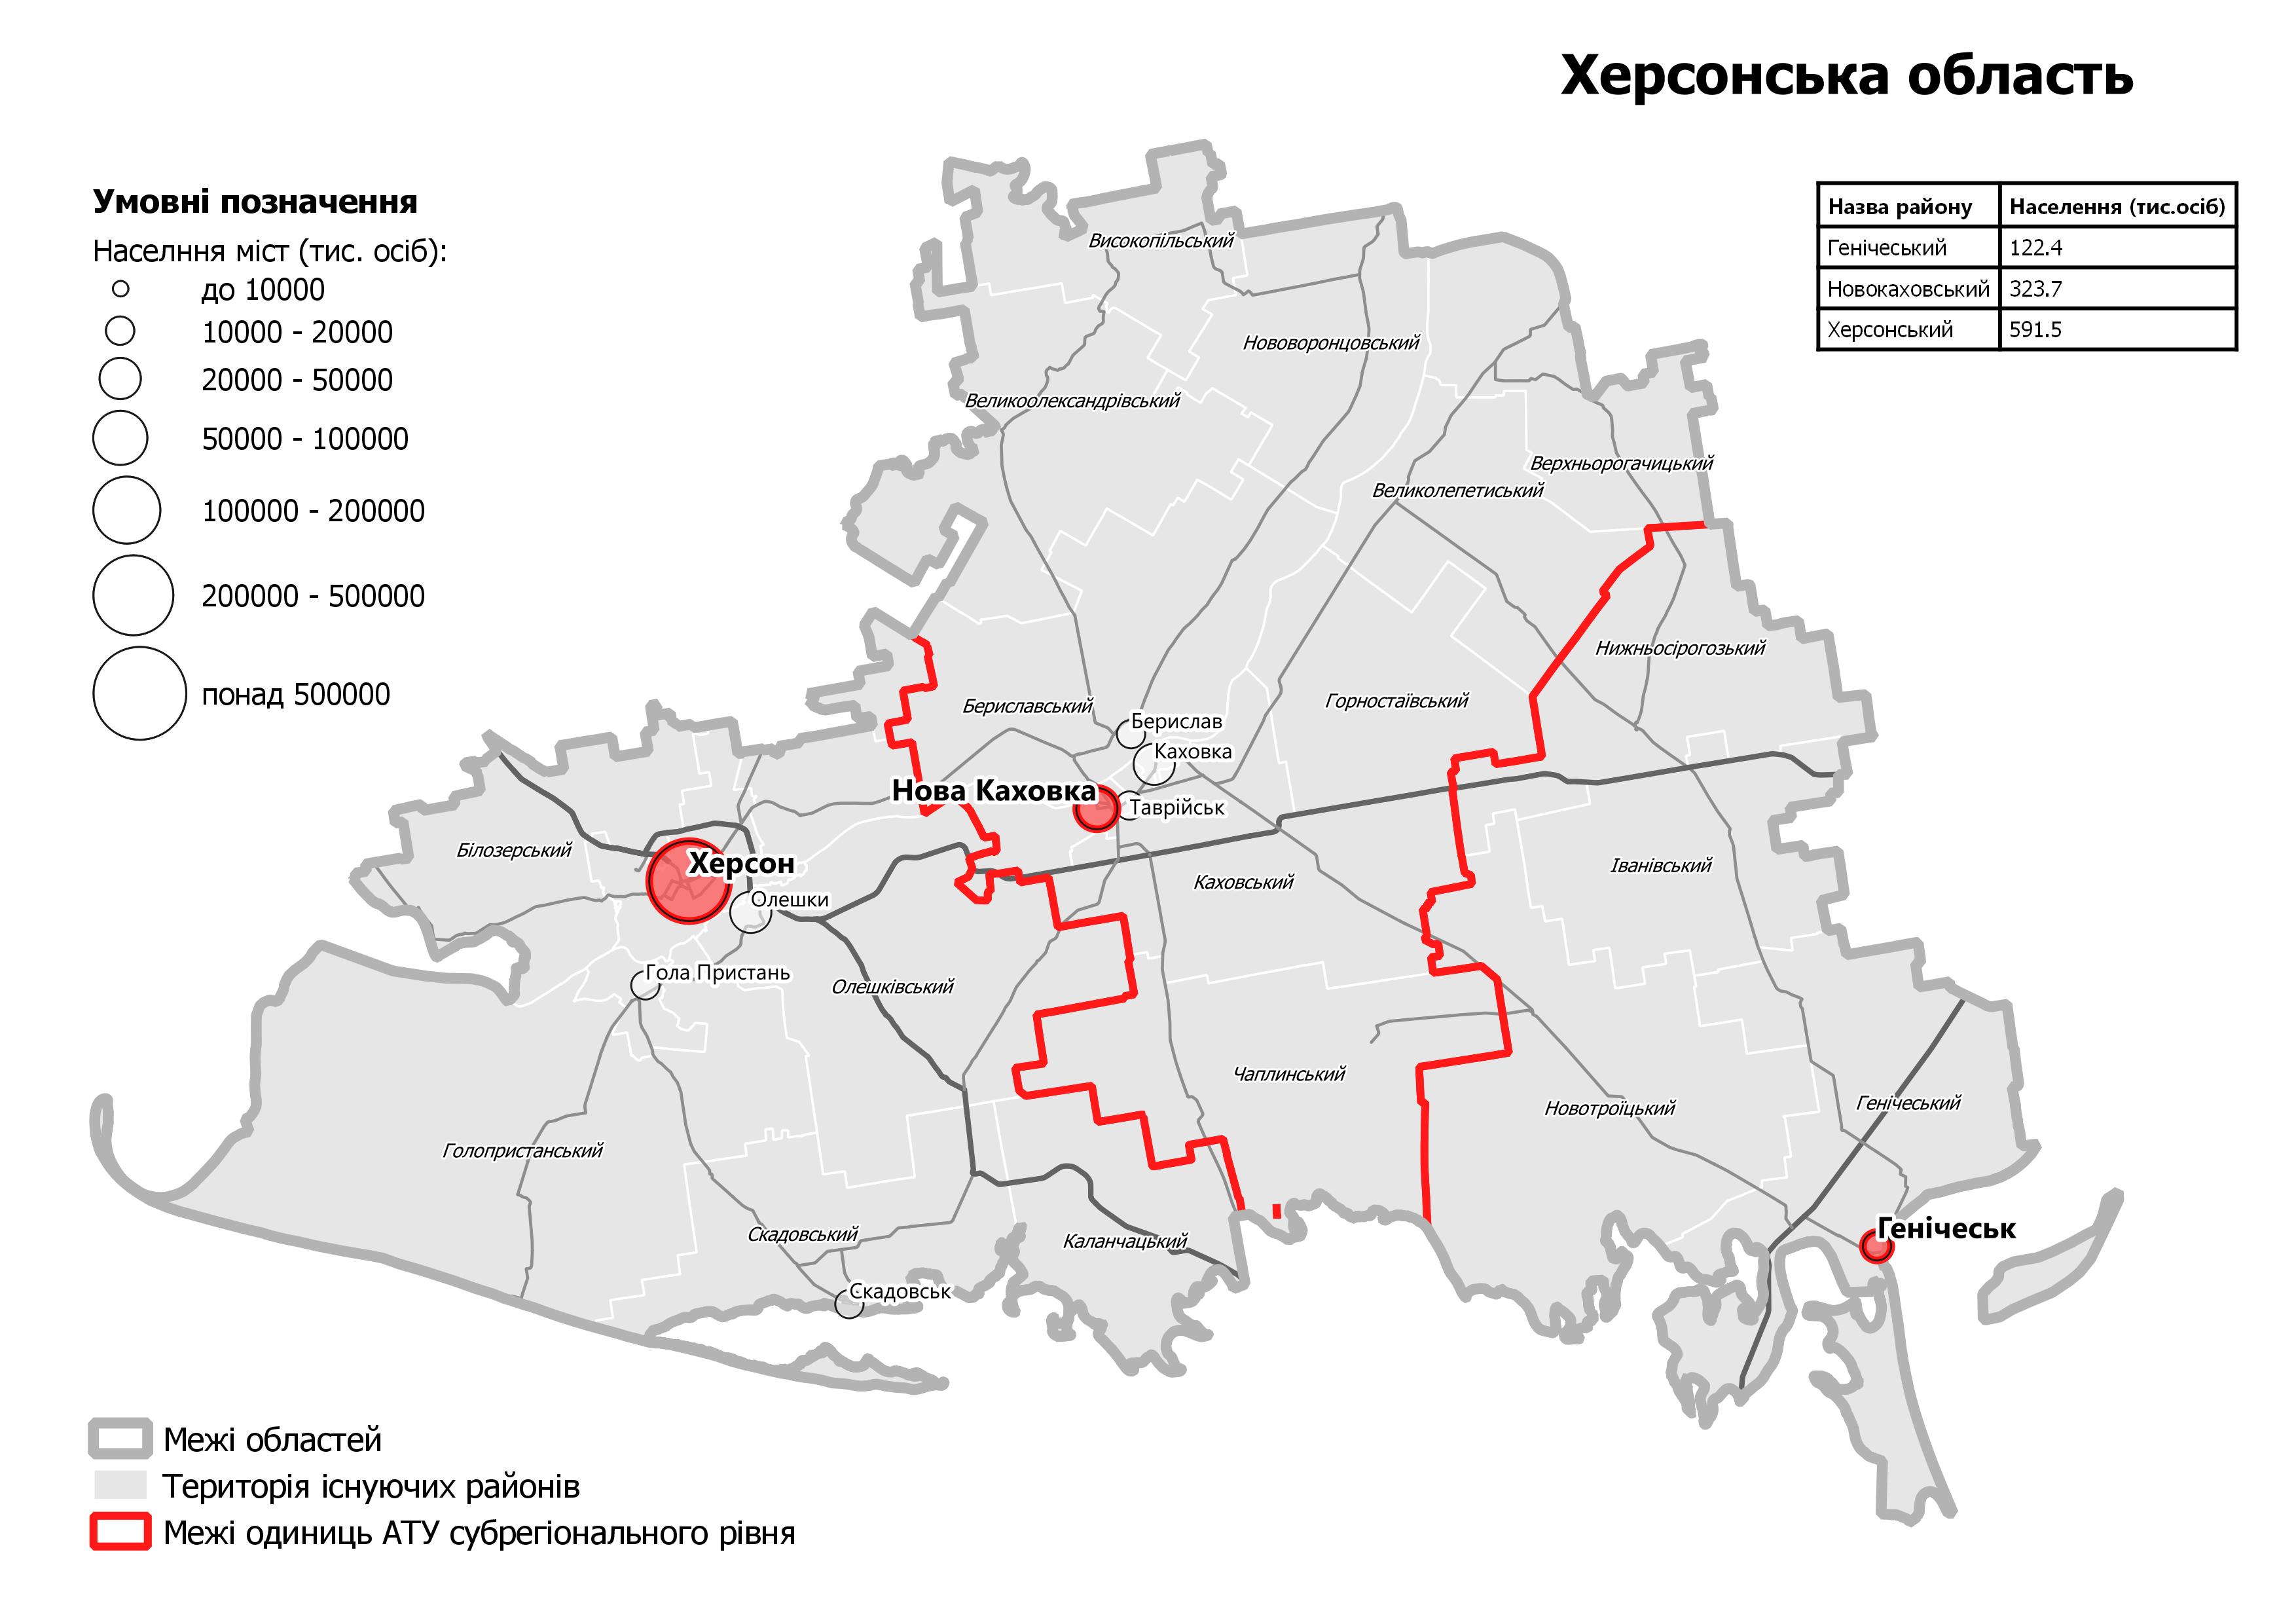 Карта нового деления на районы Херсонской области